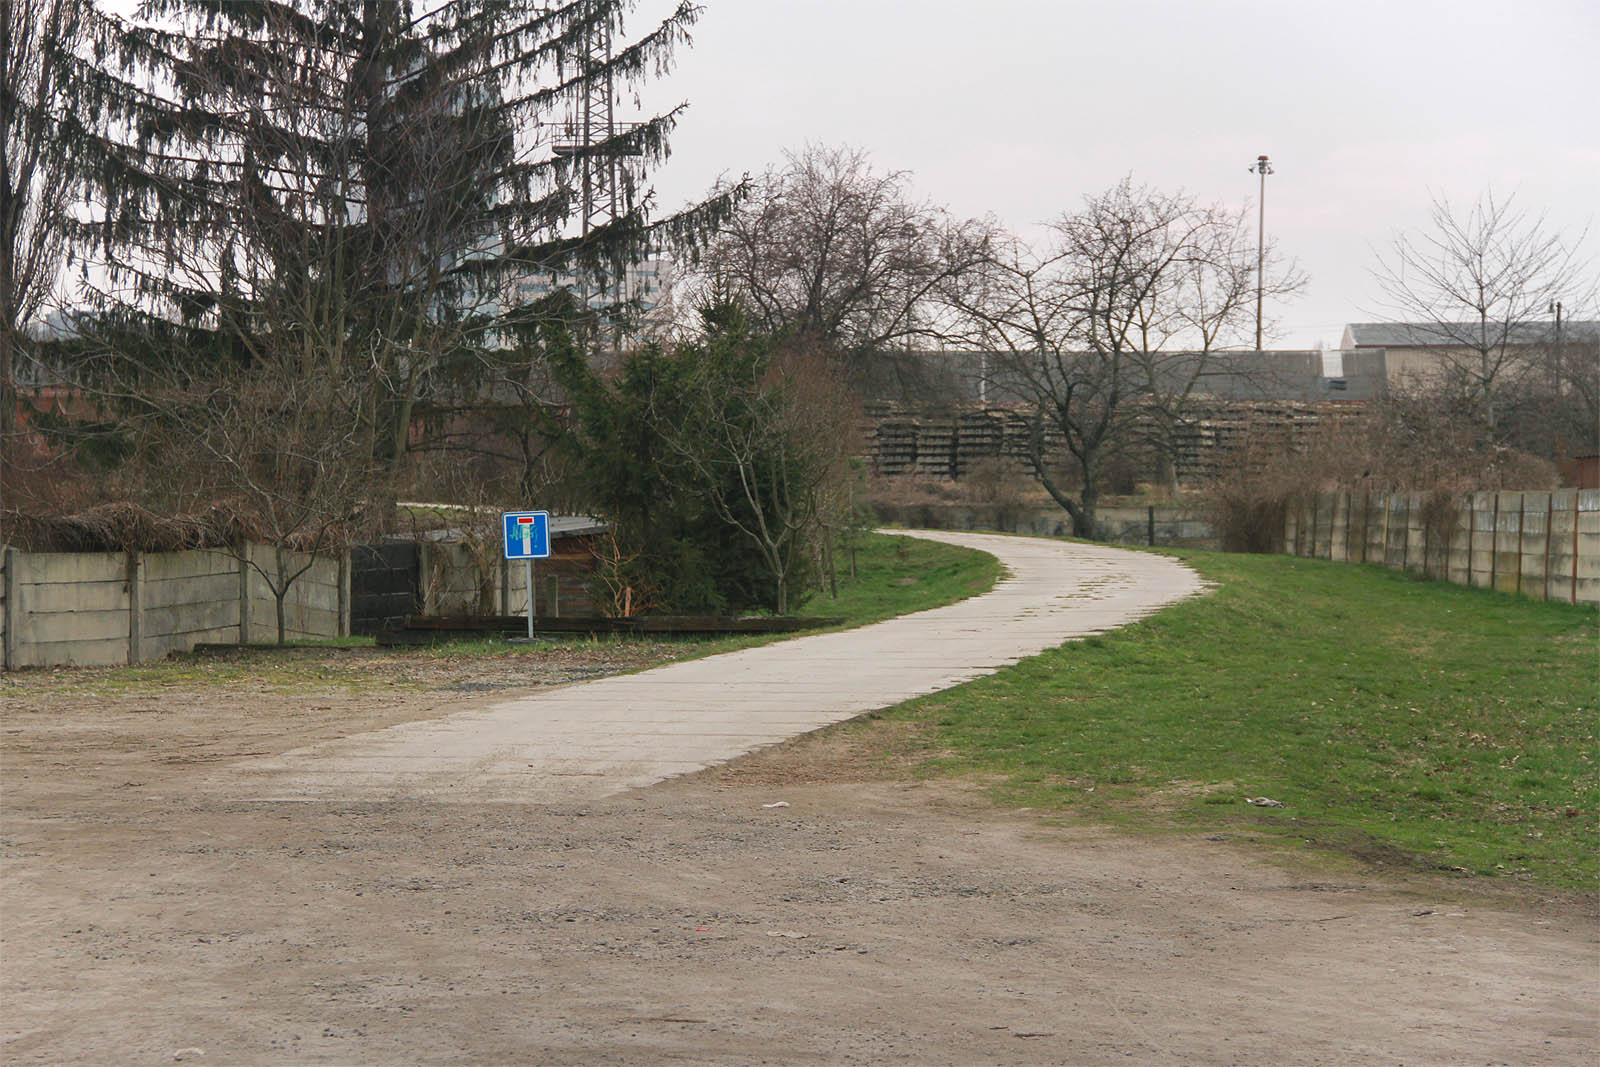 Hranice dvou světů - tady vlečka opouštěla uzavřený prostor nádraží, dnes připomínající Zemi nikoho a stávala se součástí města - další pokračování vedlo přímo ulicí U Vlečky.